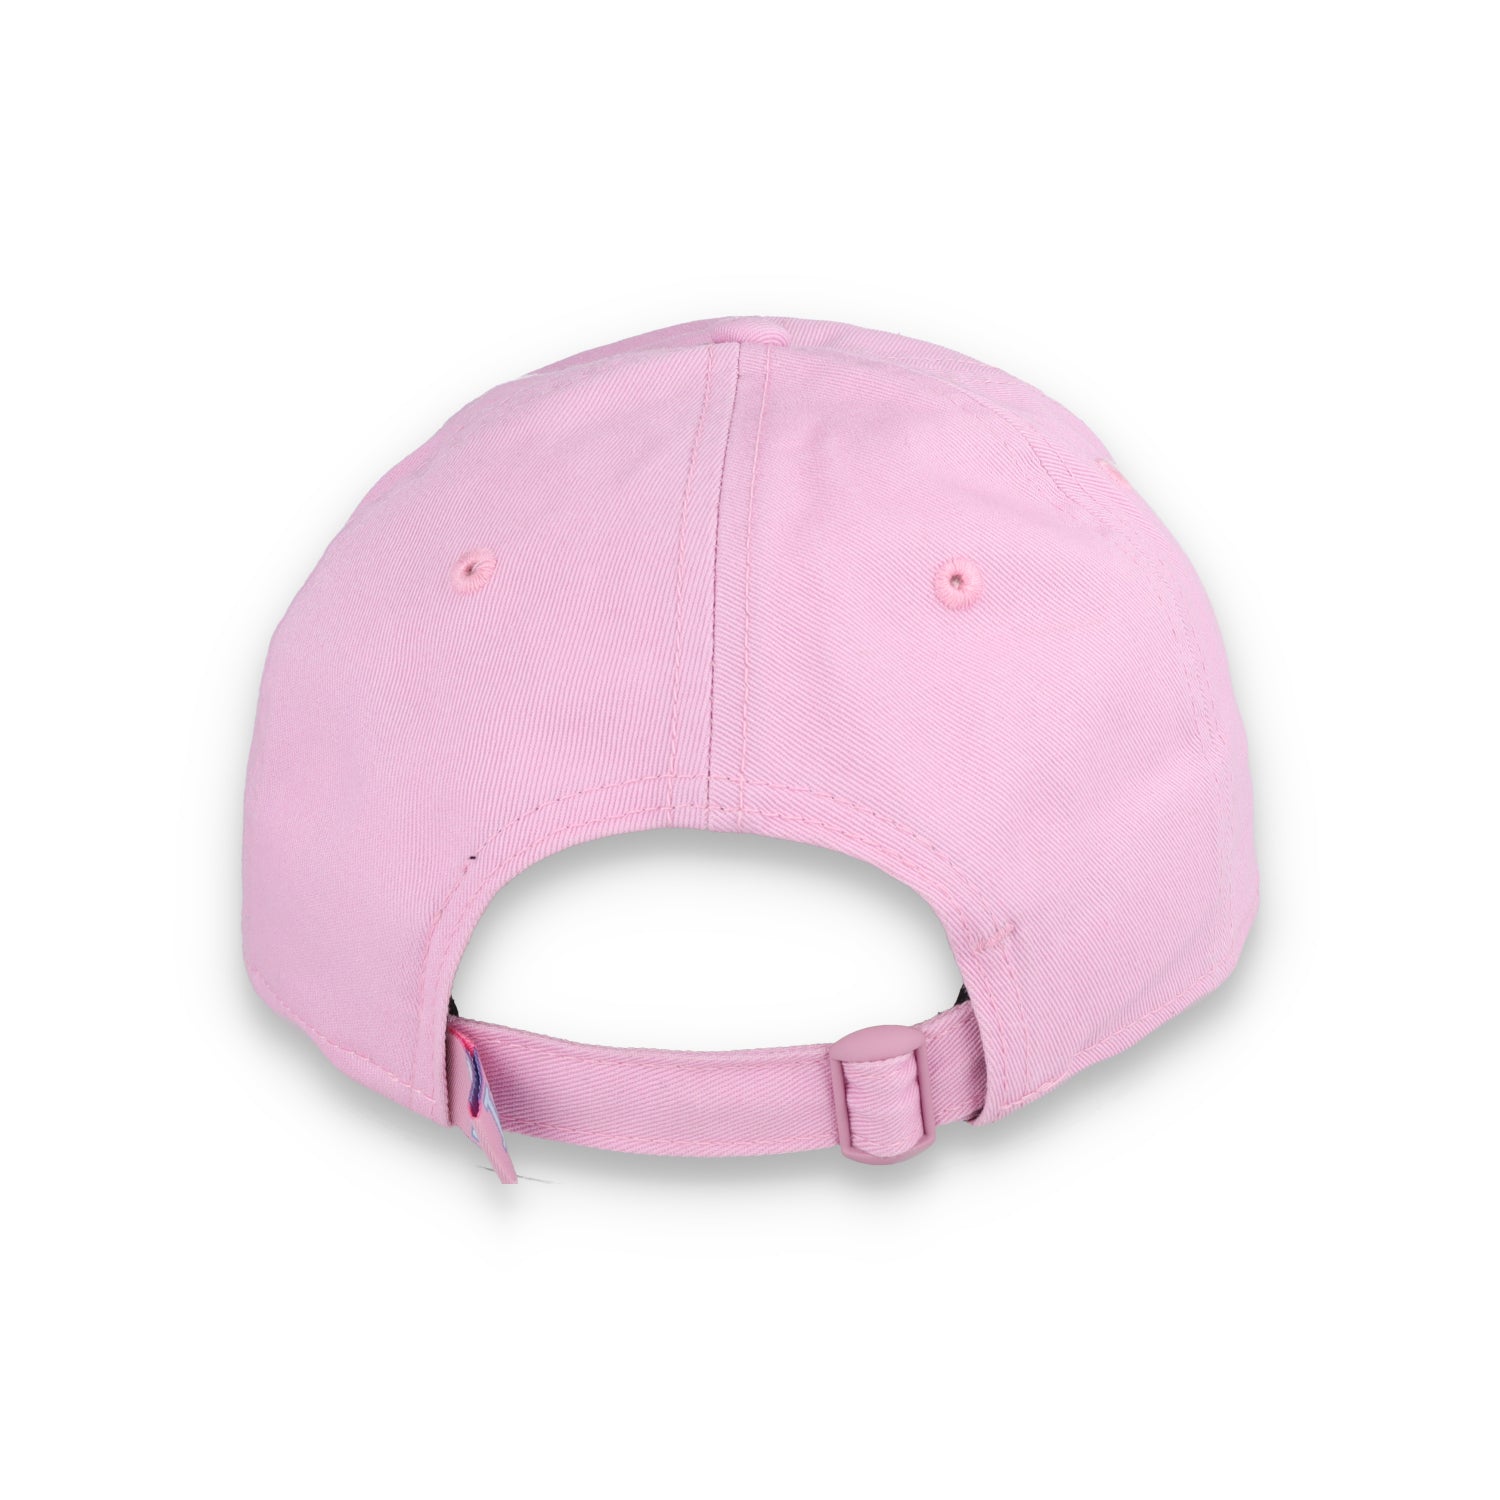 New Era Los Angeles Dodgers Color Pack 9TWENTY Adjustable Hat-Light Pink